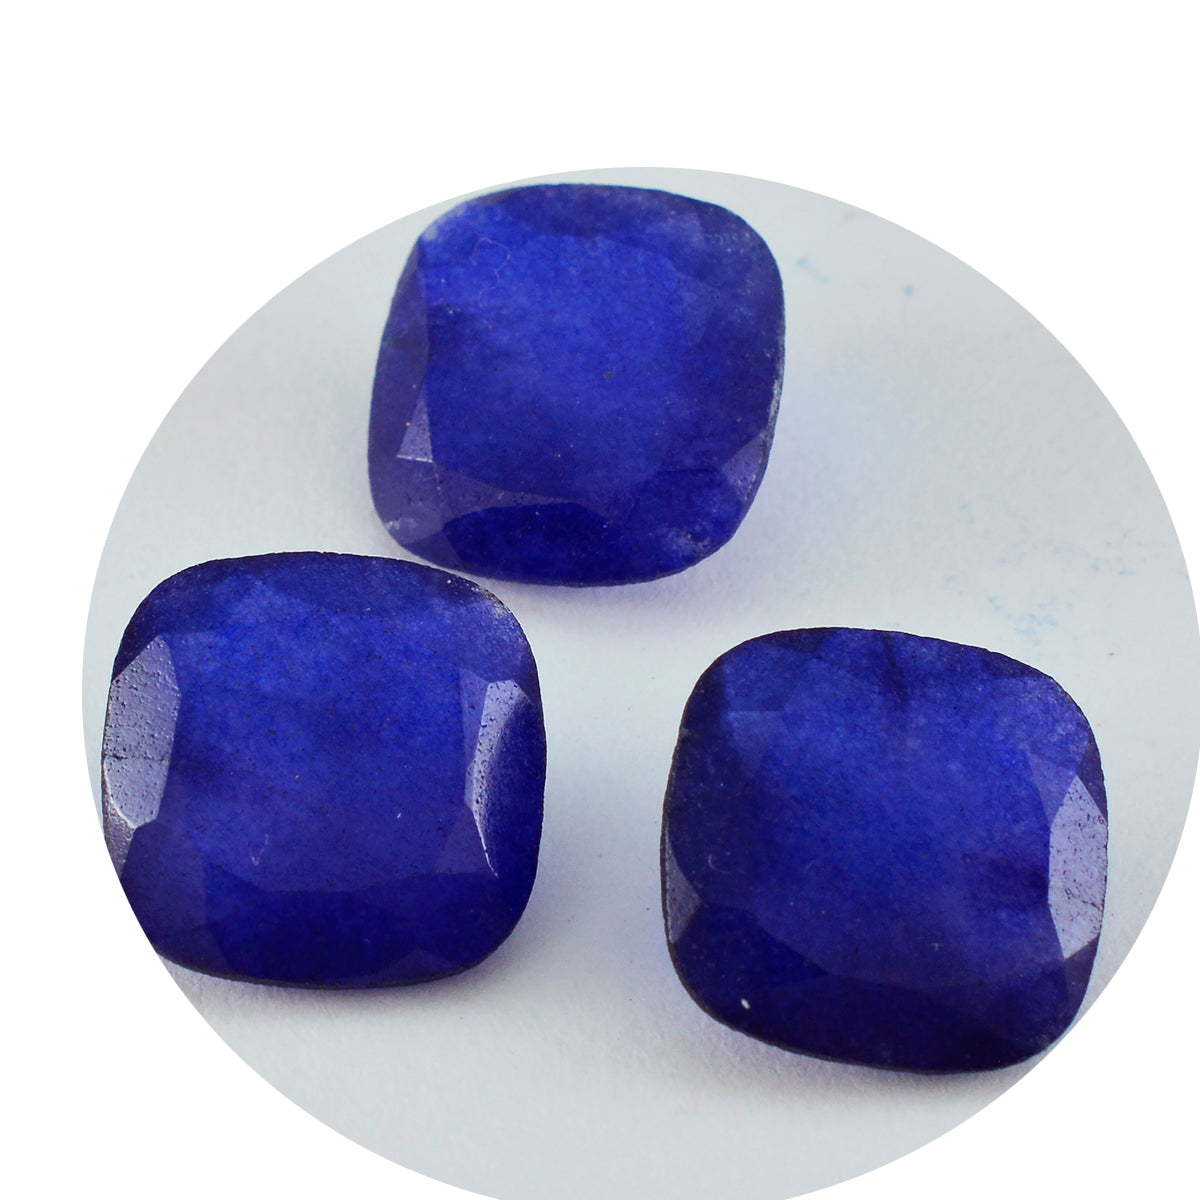 Riyogems 1 Stück natürlicher blauer Jaspis, facettiert, 13 x 13 mm, Kissenform, schöner Qualitätsstein